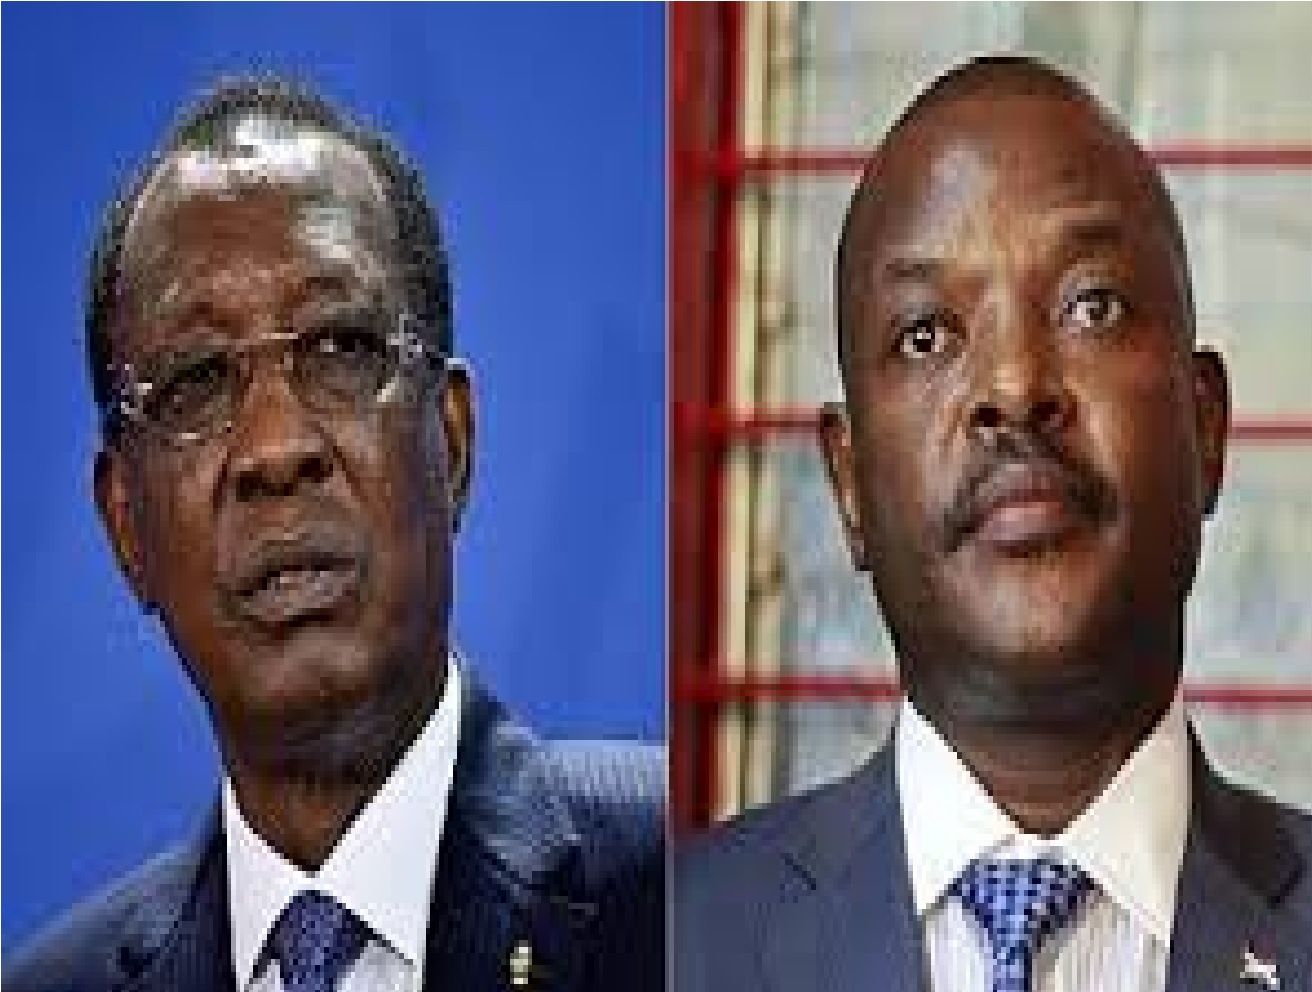 3ème mandat de Nkurunziza : en niant l’évidence, Deby Itno se ridiculise davantage – Par Senior Mbary